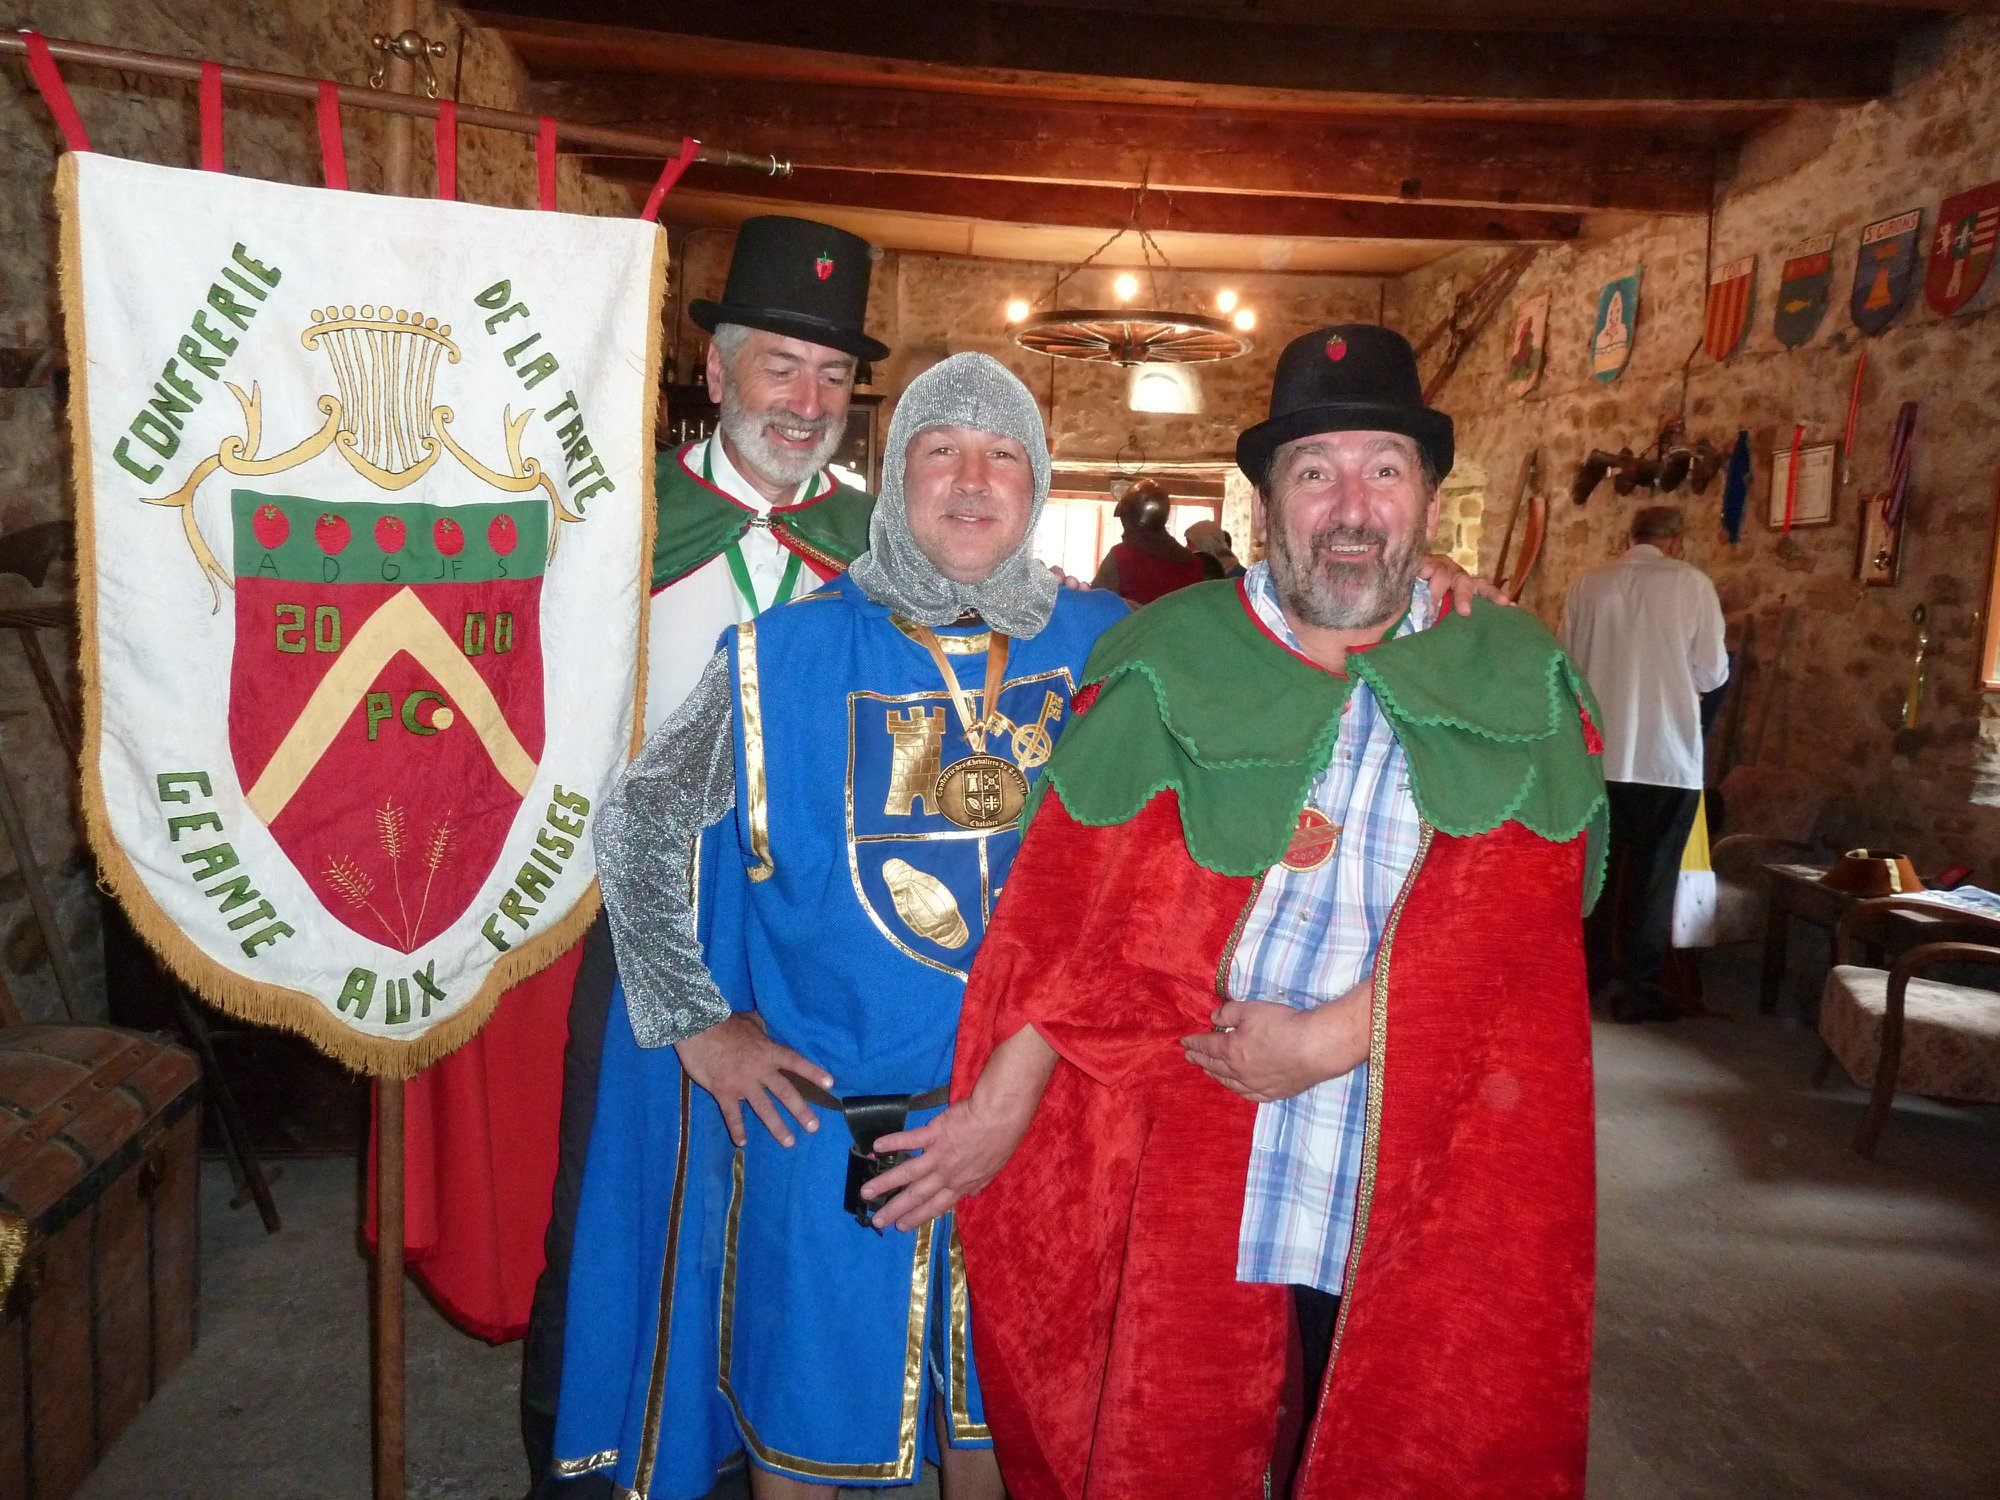 A knightly member of the La Confrérie des Chevaliers du Tougnol, along with two members of the Confrérie de la Tarte Geante Aux Fraises.